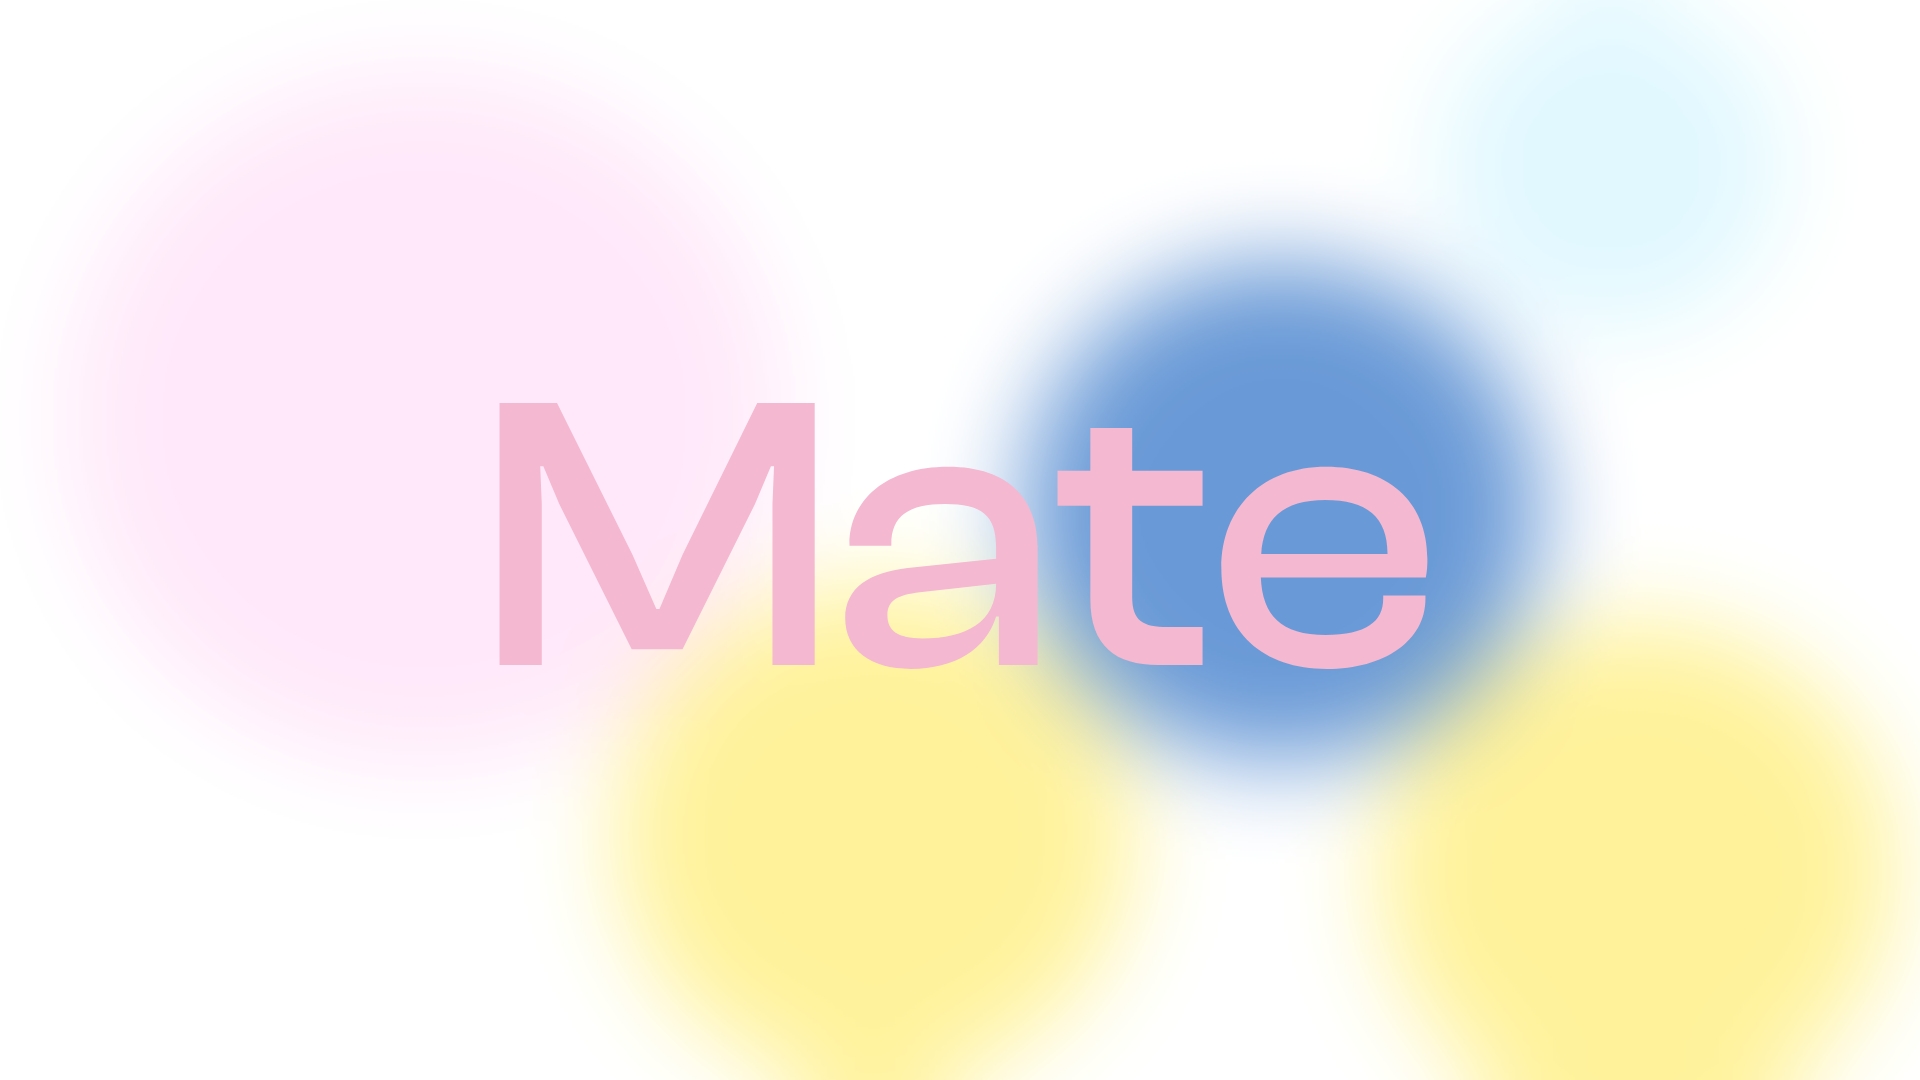 Mate Logoschriftzug auf einem Hintergrund mit kreisförmigen bunten Verläufen